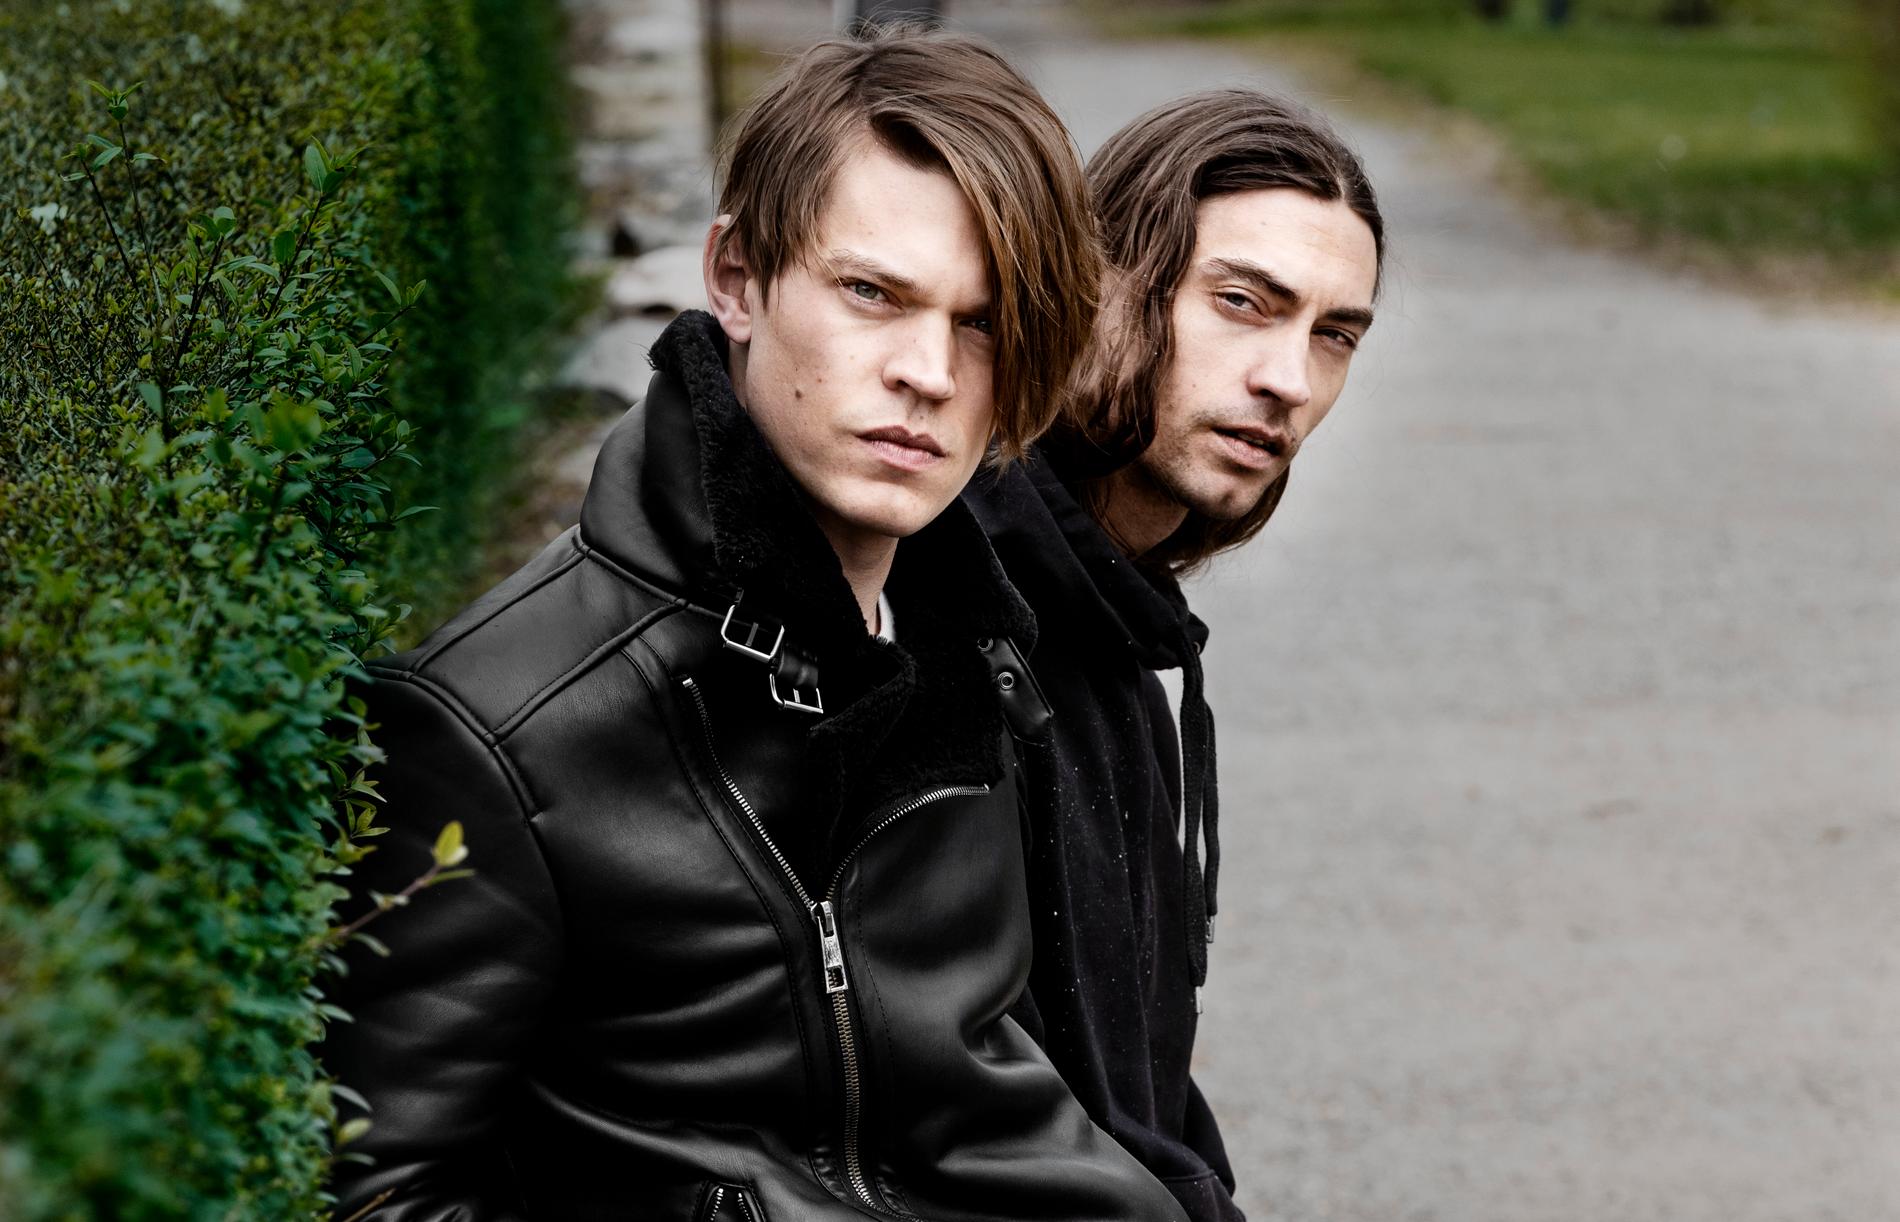 Viktor och Gustaf Norén släpper i sommar sitt första gemensamma album ”Hymns to the rising sun”.